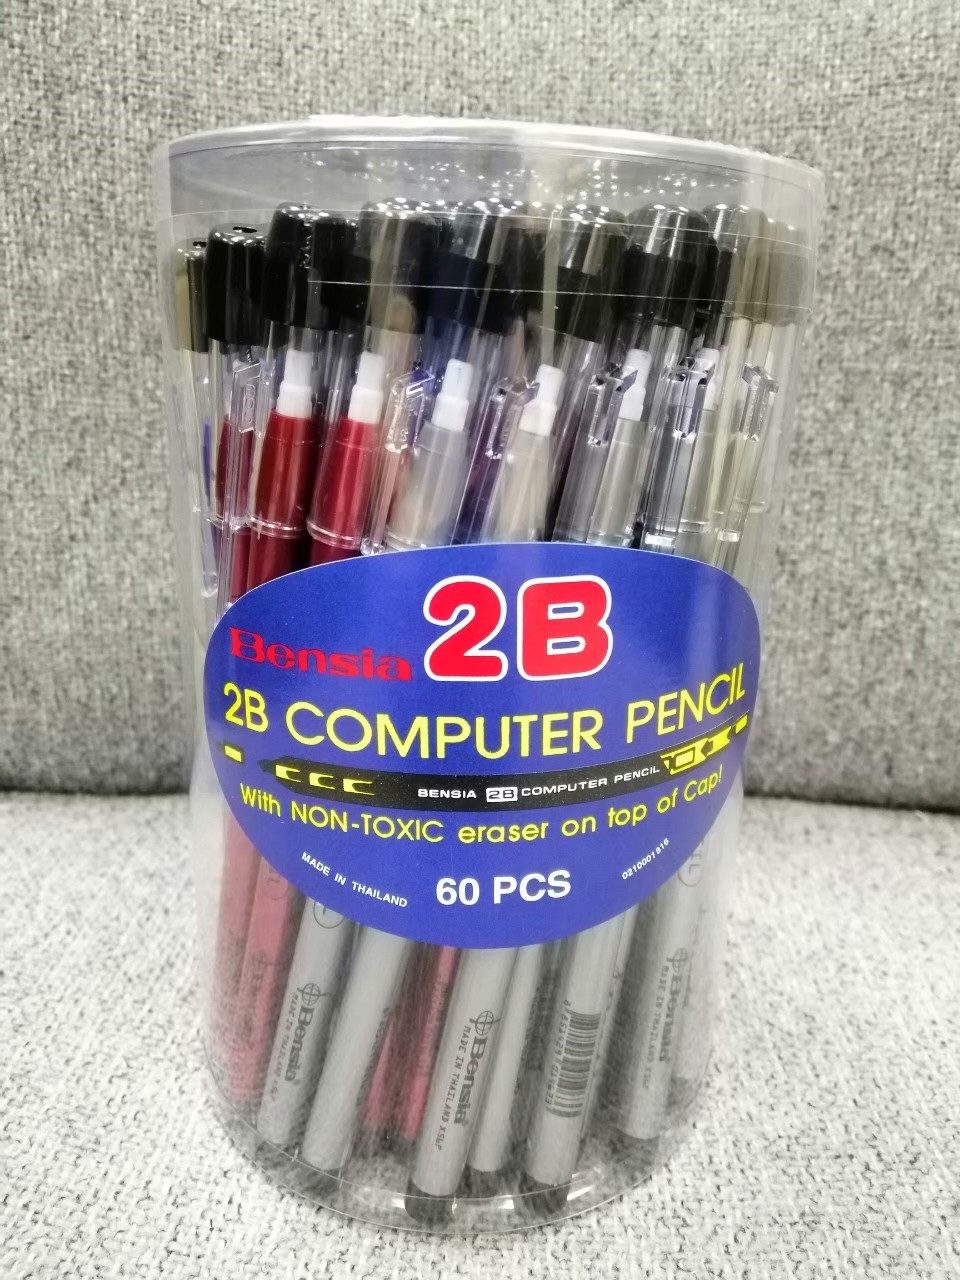 ดินสอต่อไส้Pronto ด้ามอ้วน 2B มียางลบ (กระป๋อง50ด้ามลัง32กระป๋อง)